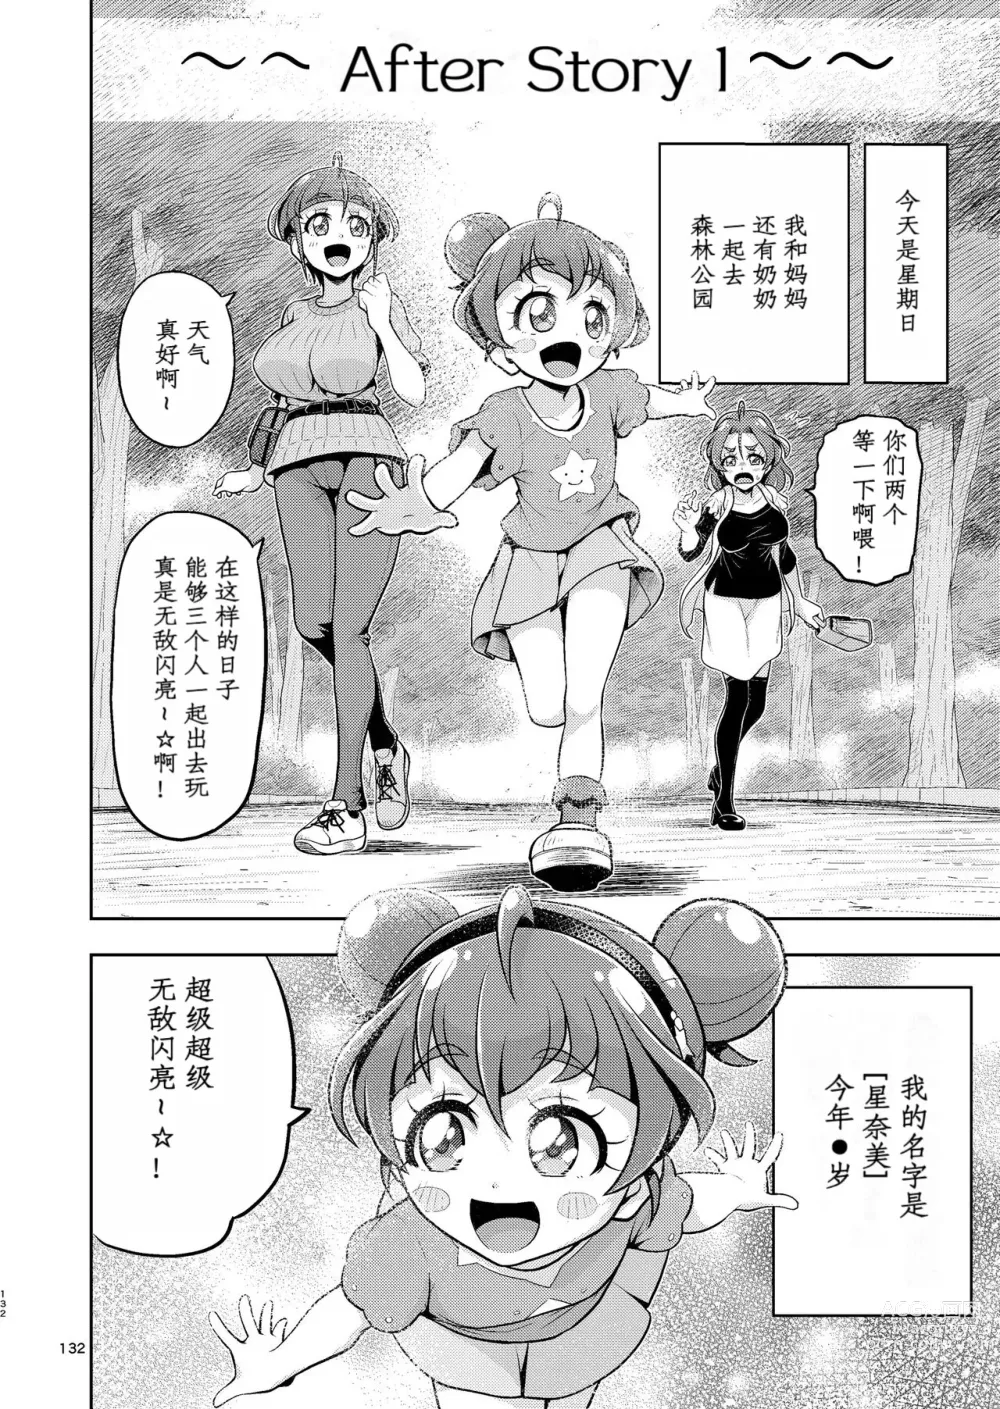 Page 1 of doujinshi Hoshi Asobi 2